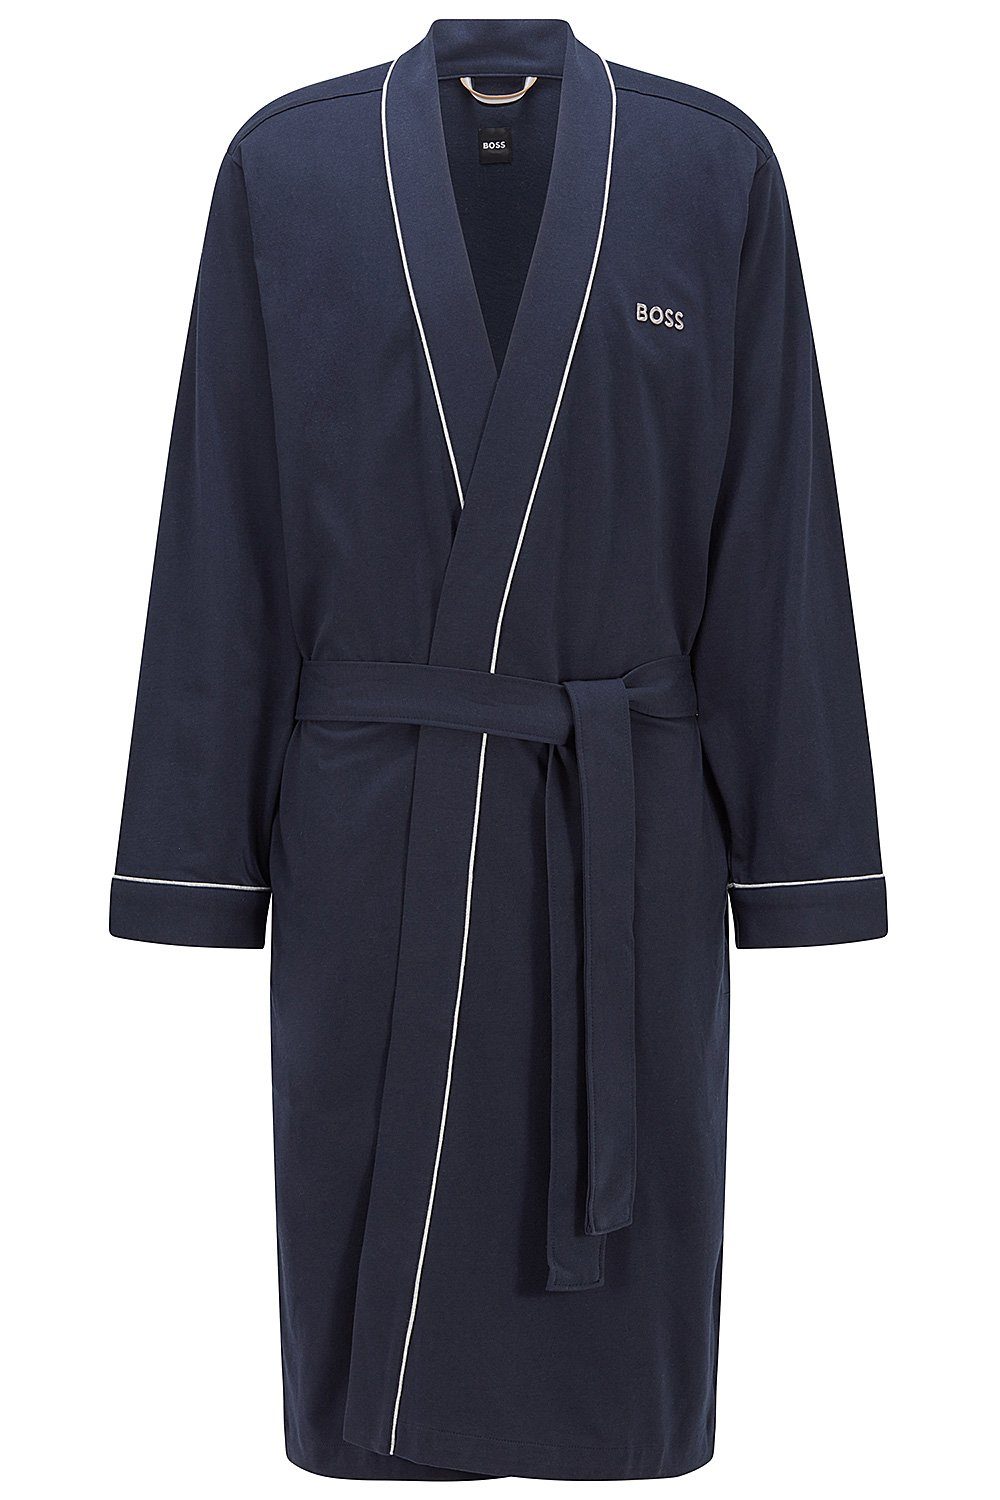 BOSS Herrenbademantel Kimono BM, Baumwolle, Taillengürtel, Blue (403) Baumwolle Dark Morgenmantel aus